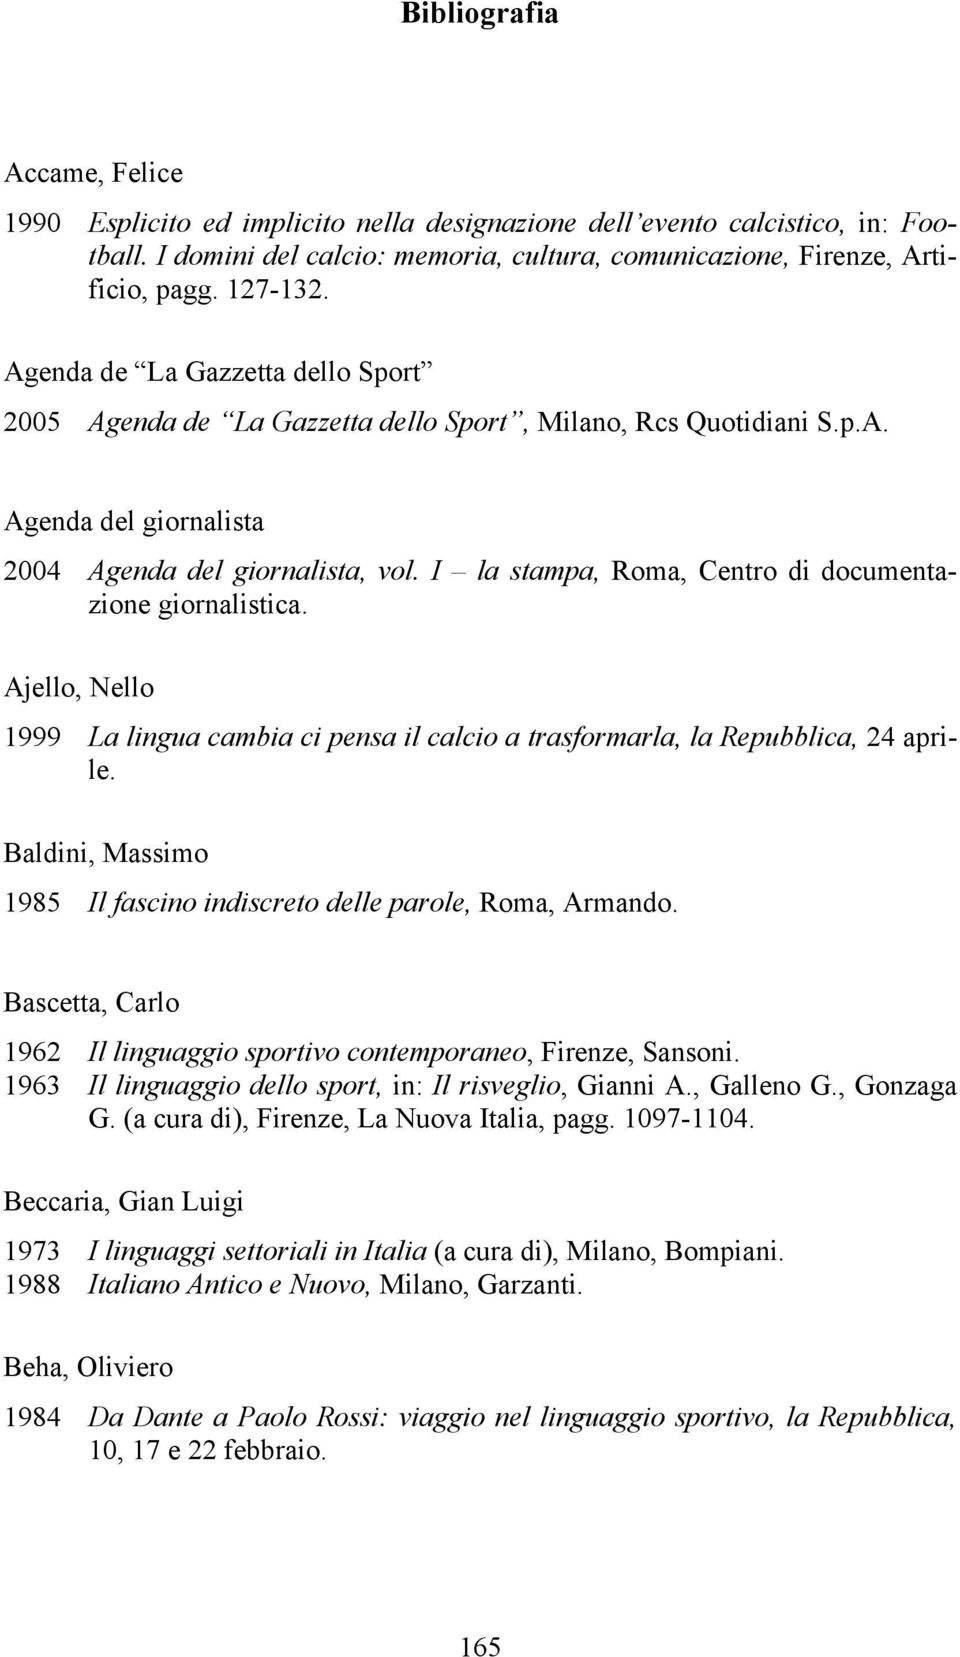 I la stampa, Roma, Centro di documentazione giornalistica. Ajello, Nello 1999 La lingua cambia ci pensa il calcio a trasformarla, la Repubblica, 24 aprile.